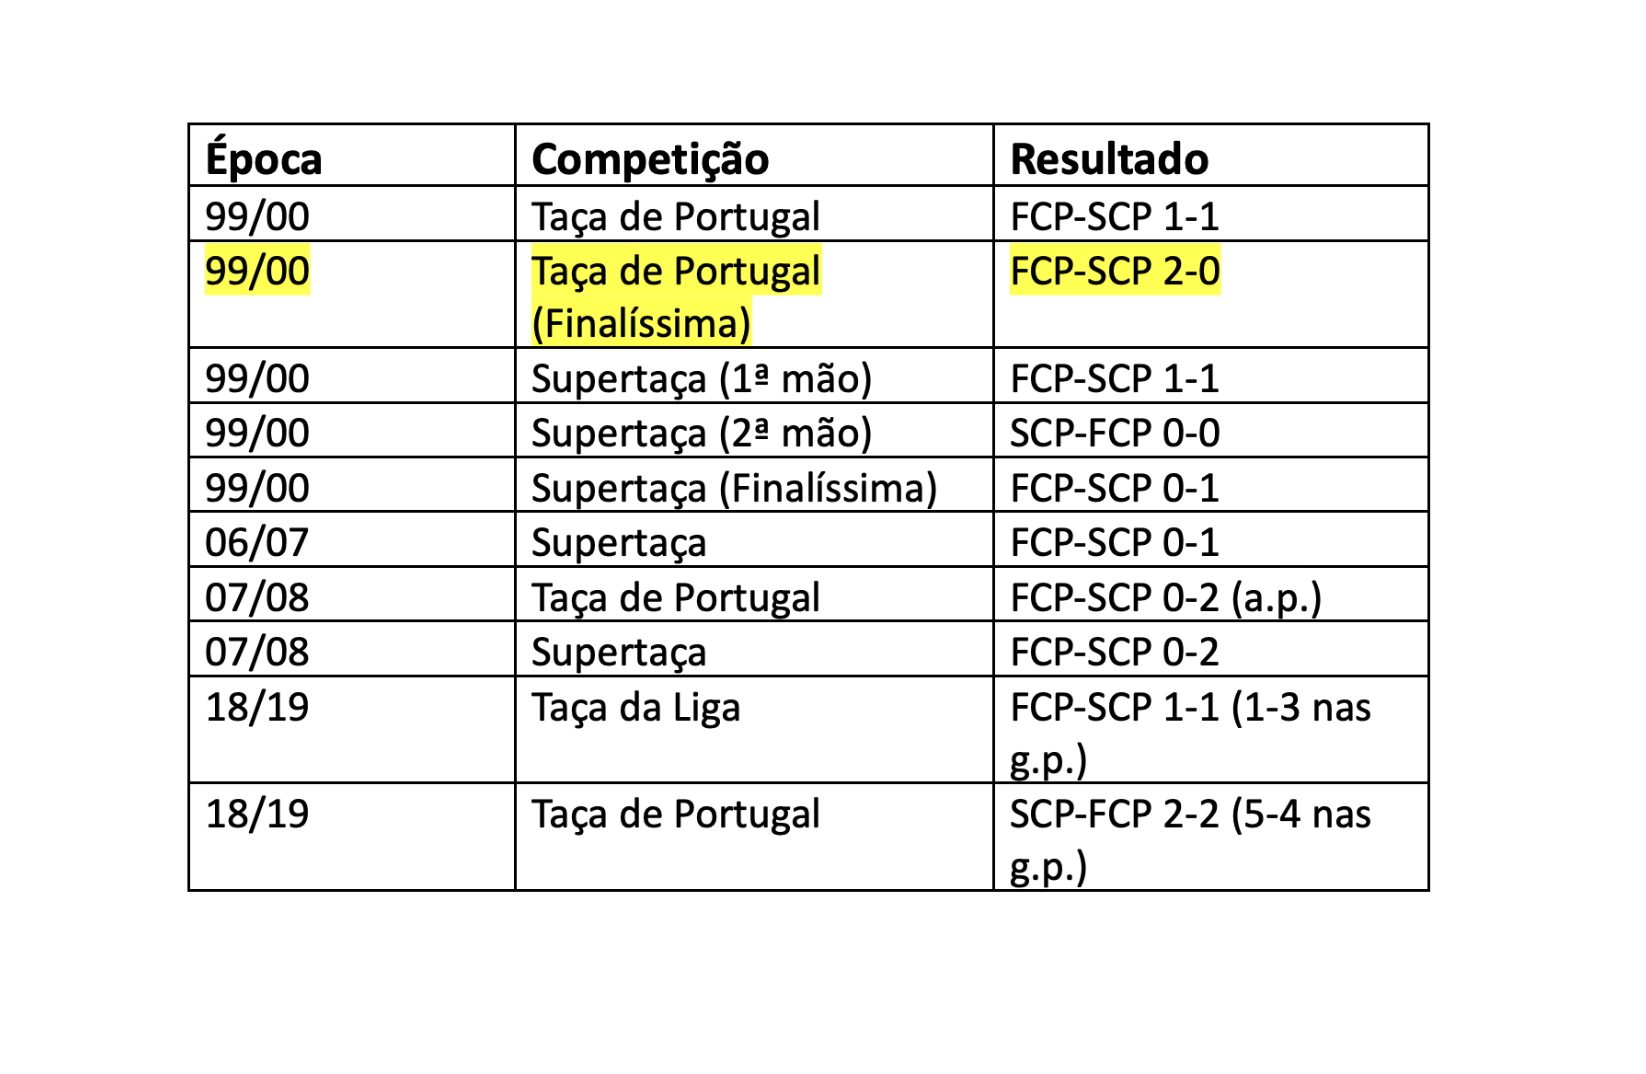 O Sporting não ganha ao Porto para o Campeonato há 13 jogos. O